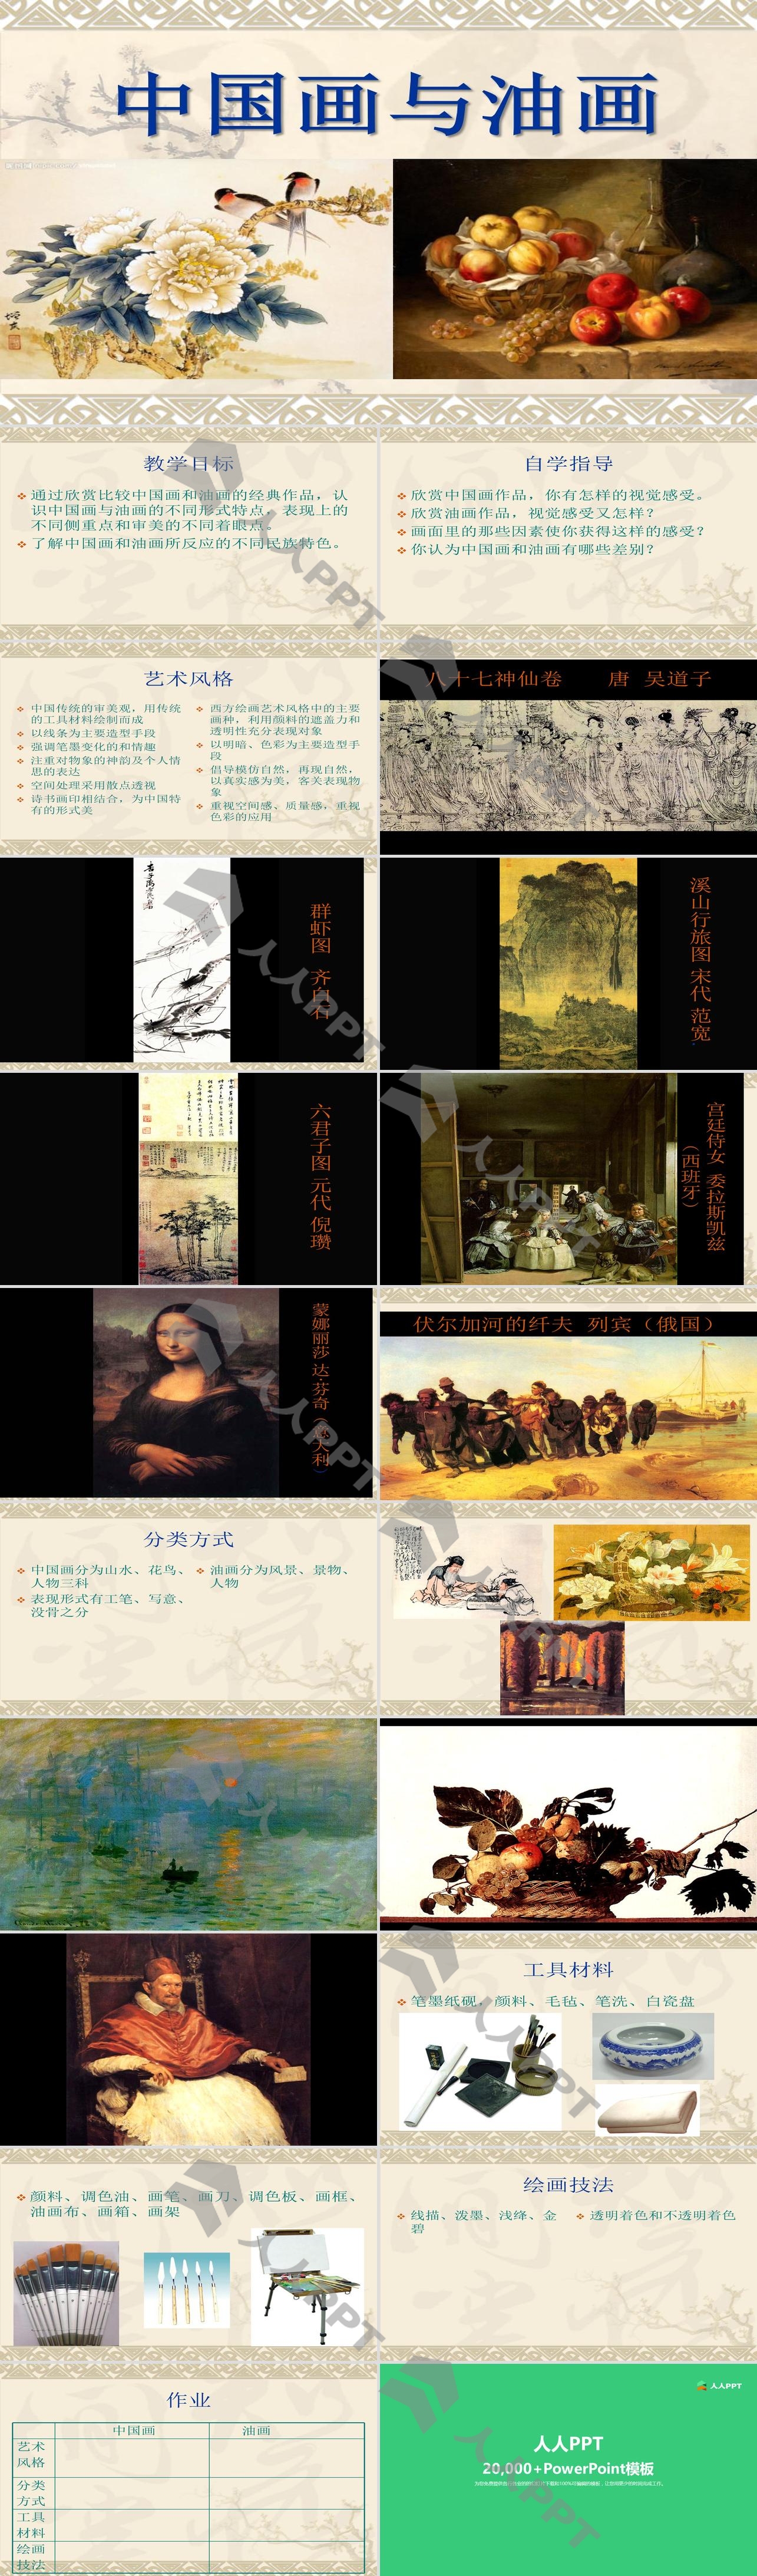 《中国画与油画》PPT课件2长图